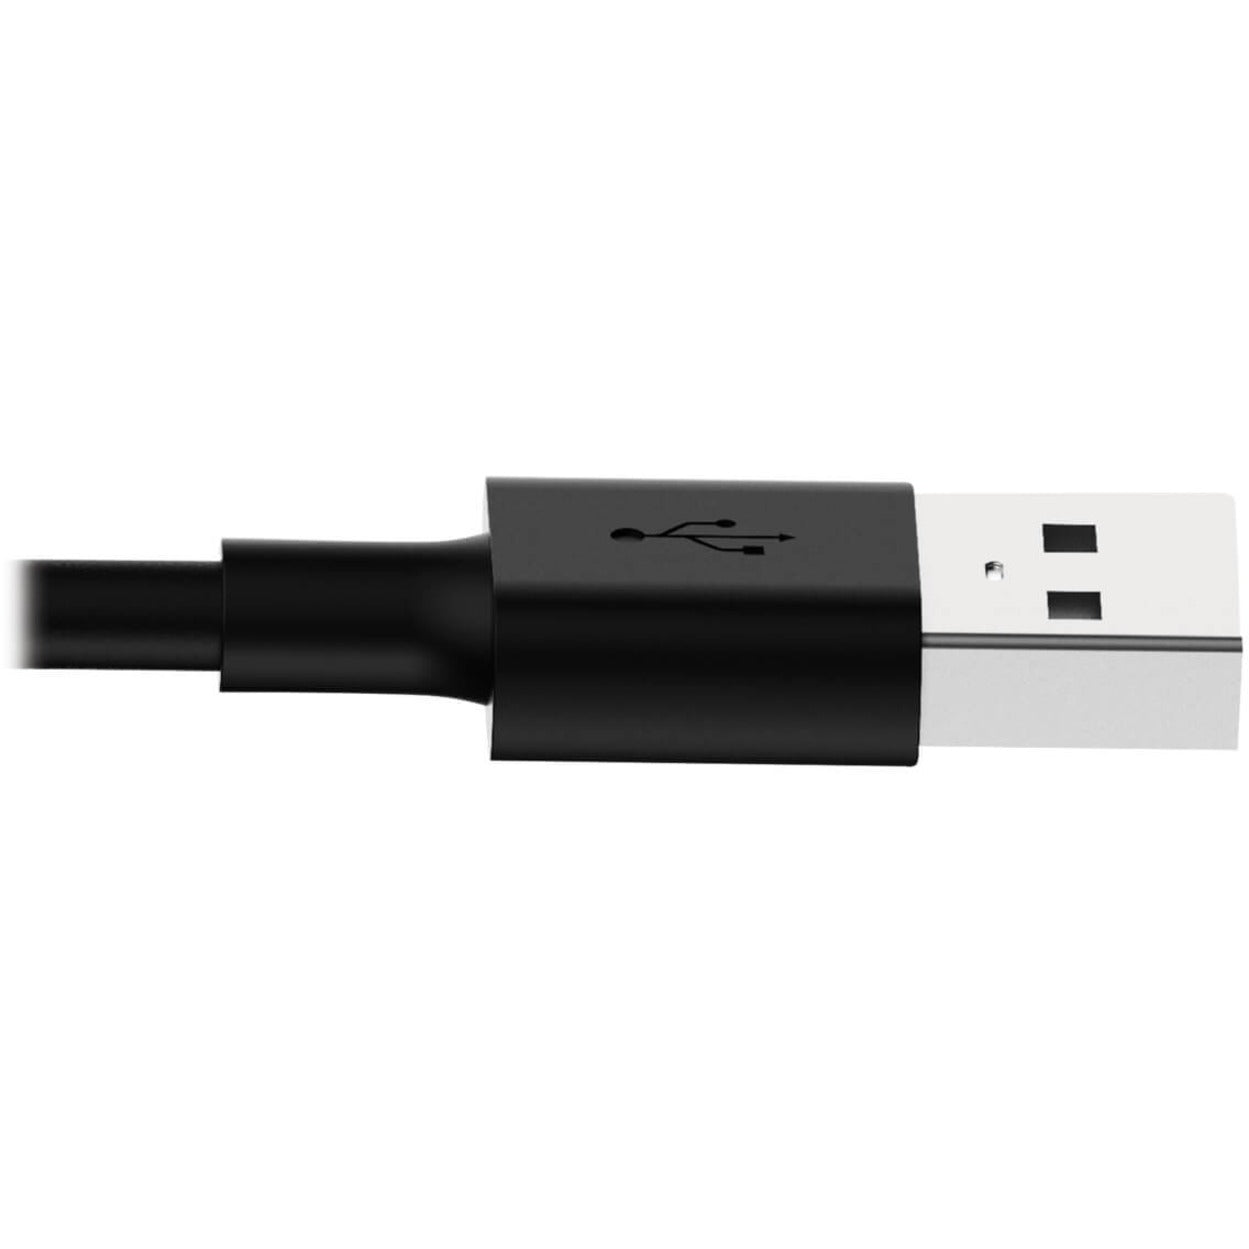 تريب لايت كبل شحن / مزامنة USB أسود بطول 6 أقدام (1.8 متر) مع منفذ Lightning ، متوافق مع iPhone و iPad و iPod ، معتمد من MFI